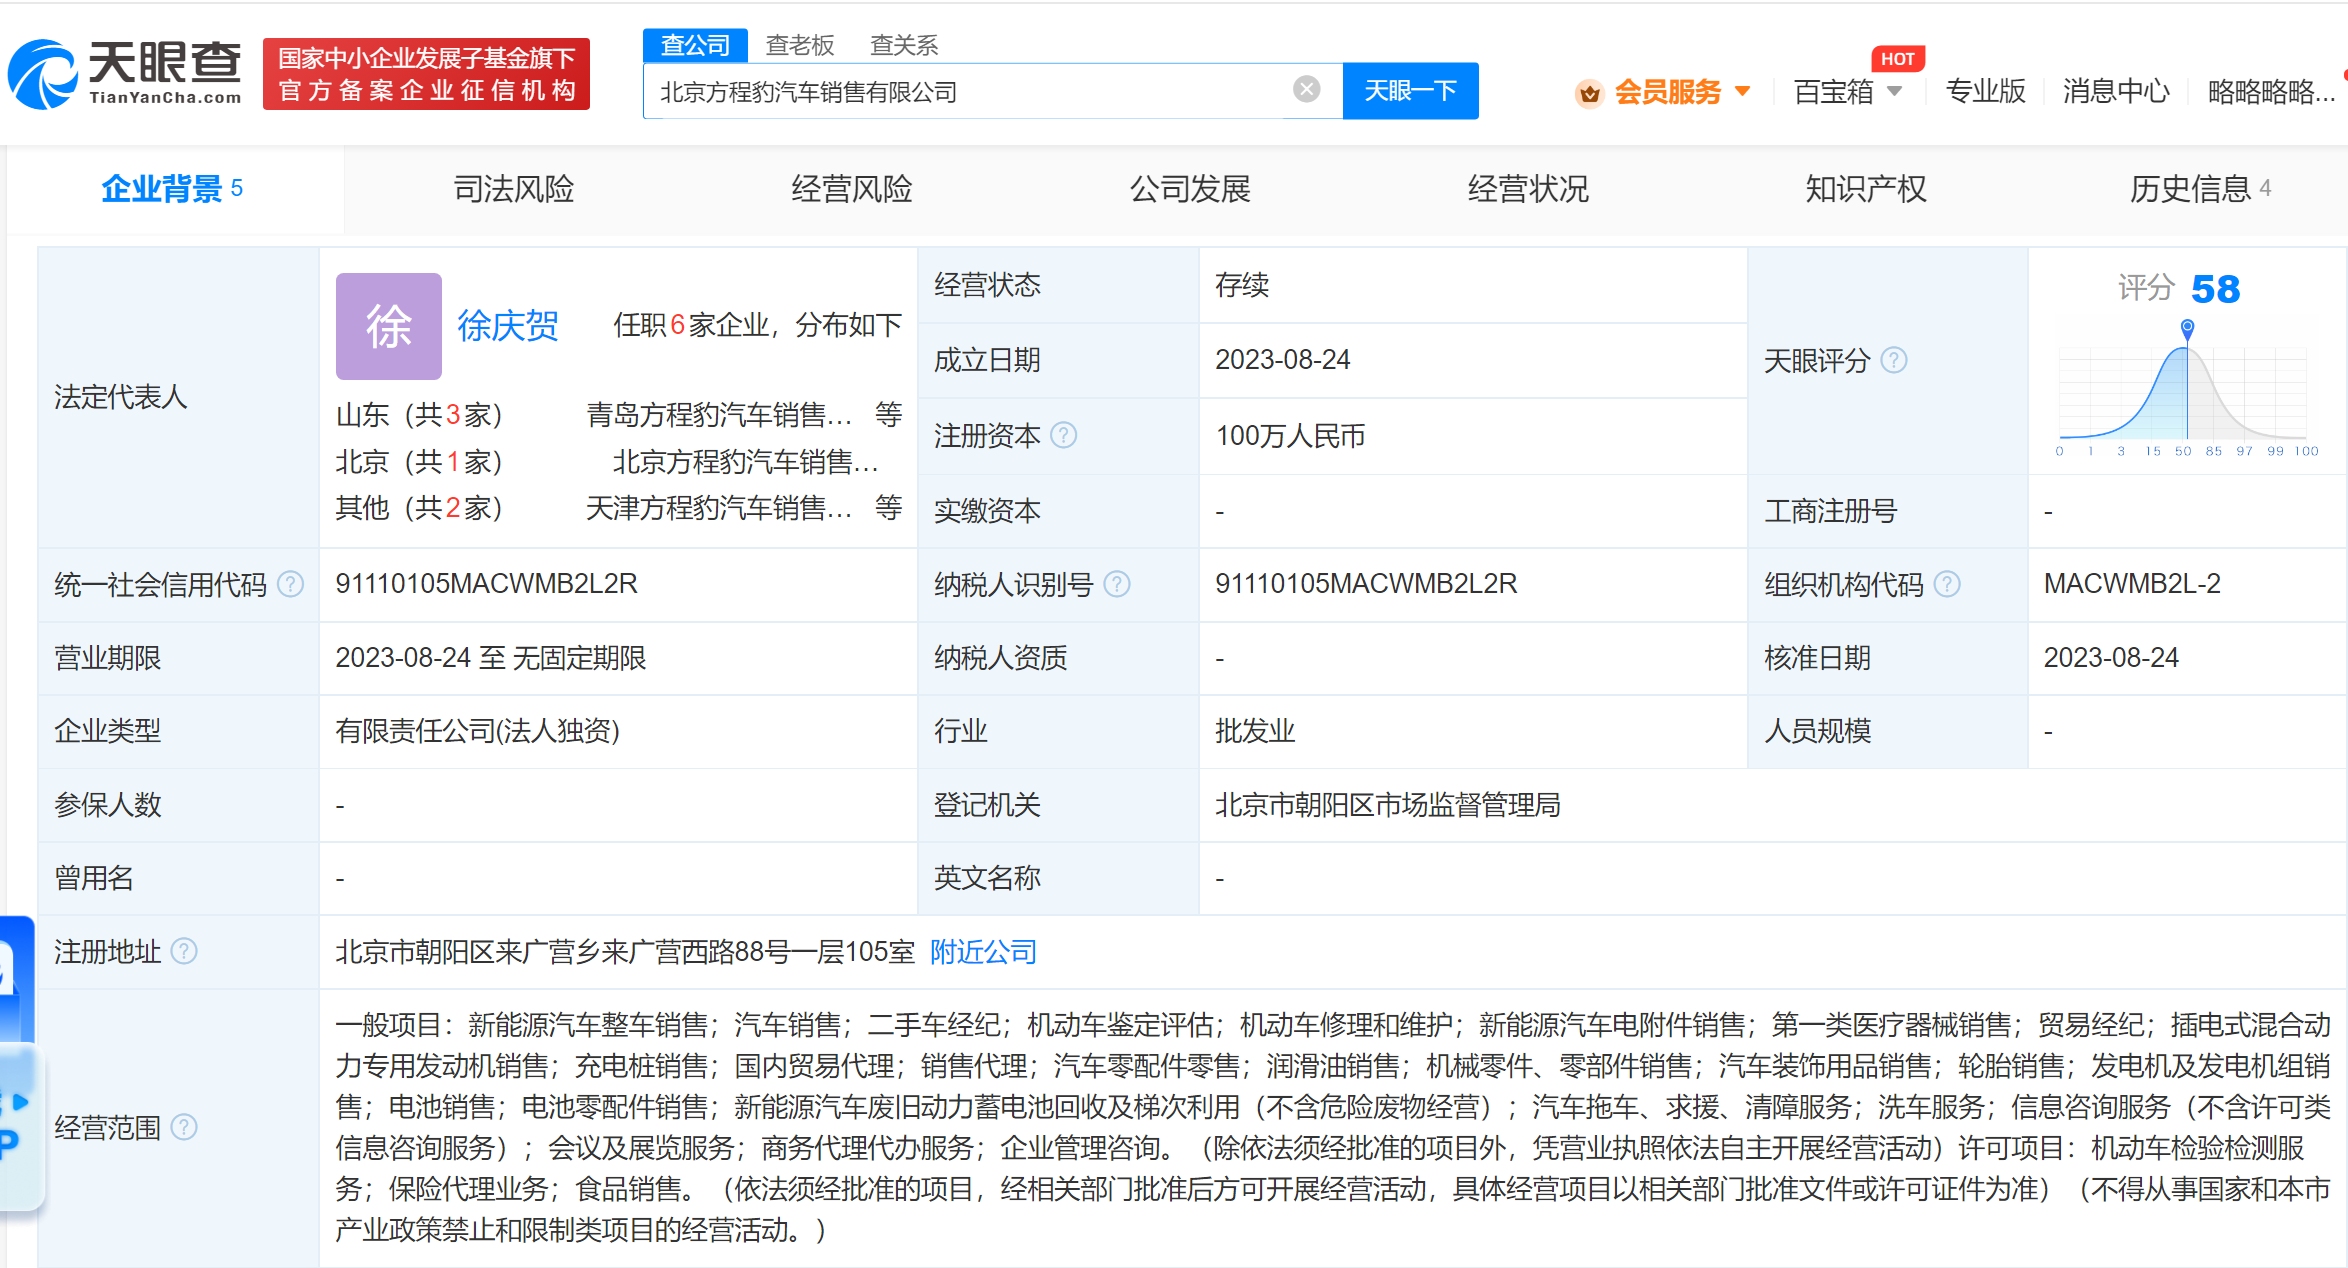 比亞迪在北京成立方程豹銷售公司